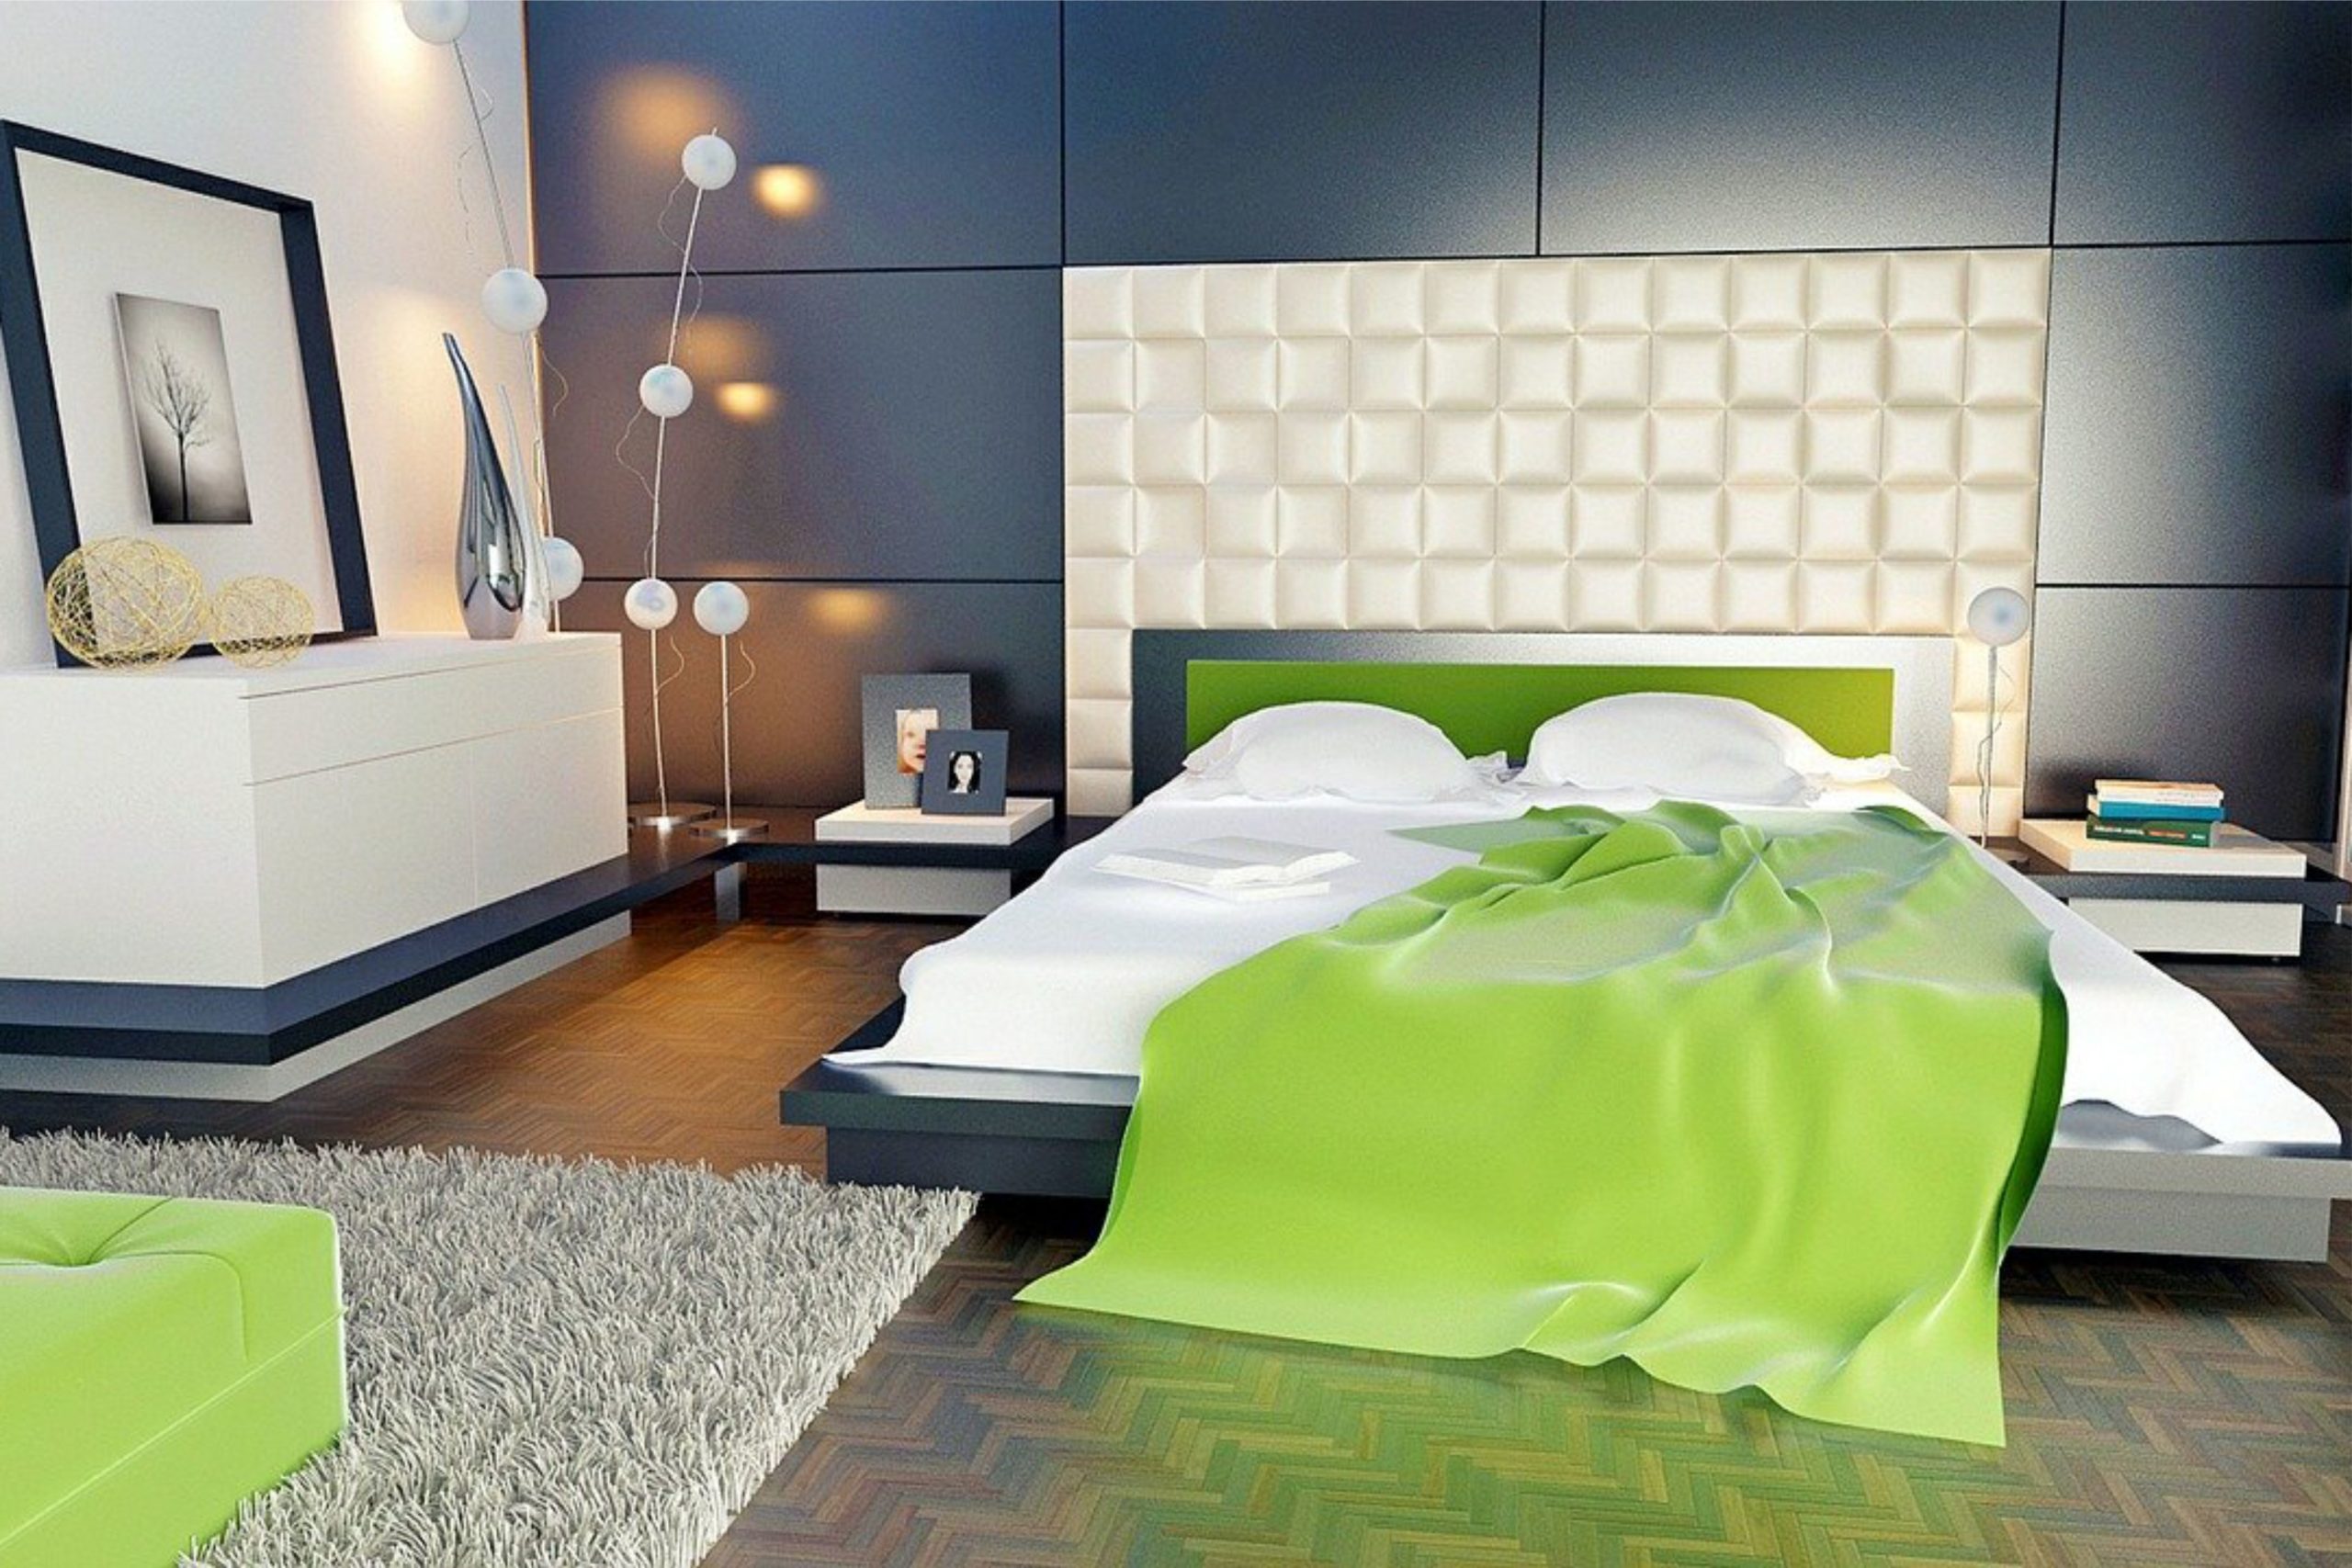 Cómo ubicar los muebles en un dormitorio - ARQUP Arquitectura, Diseño